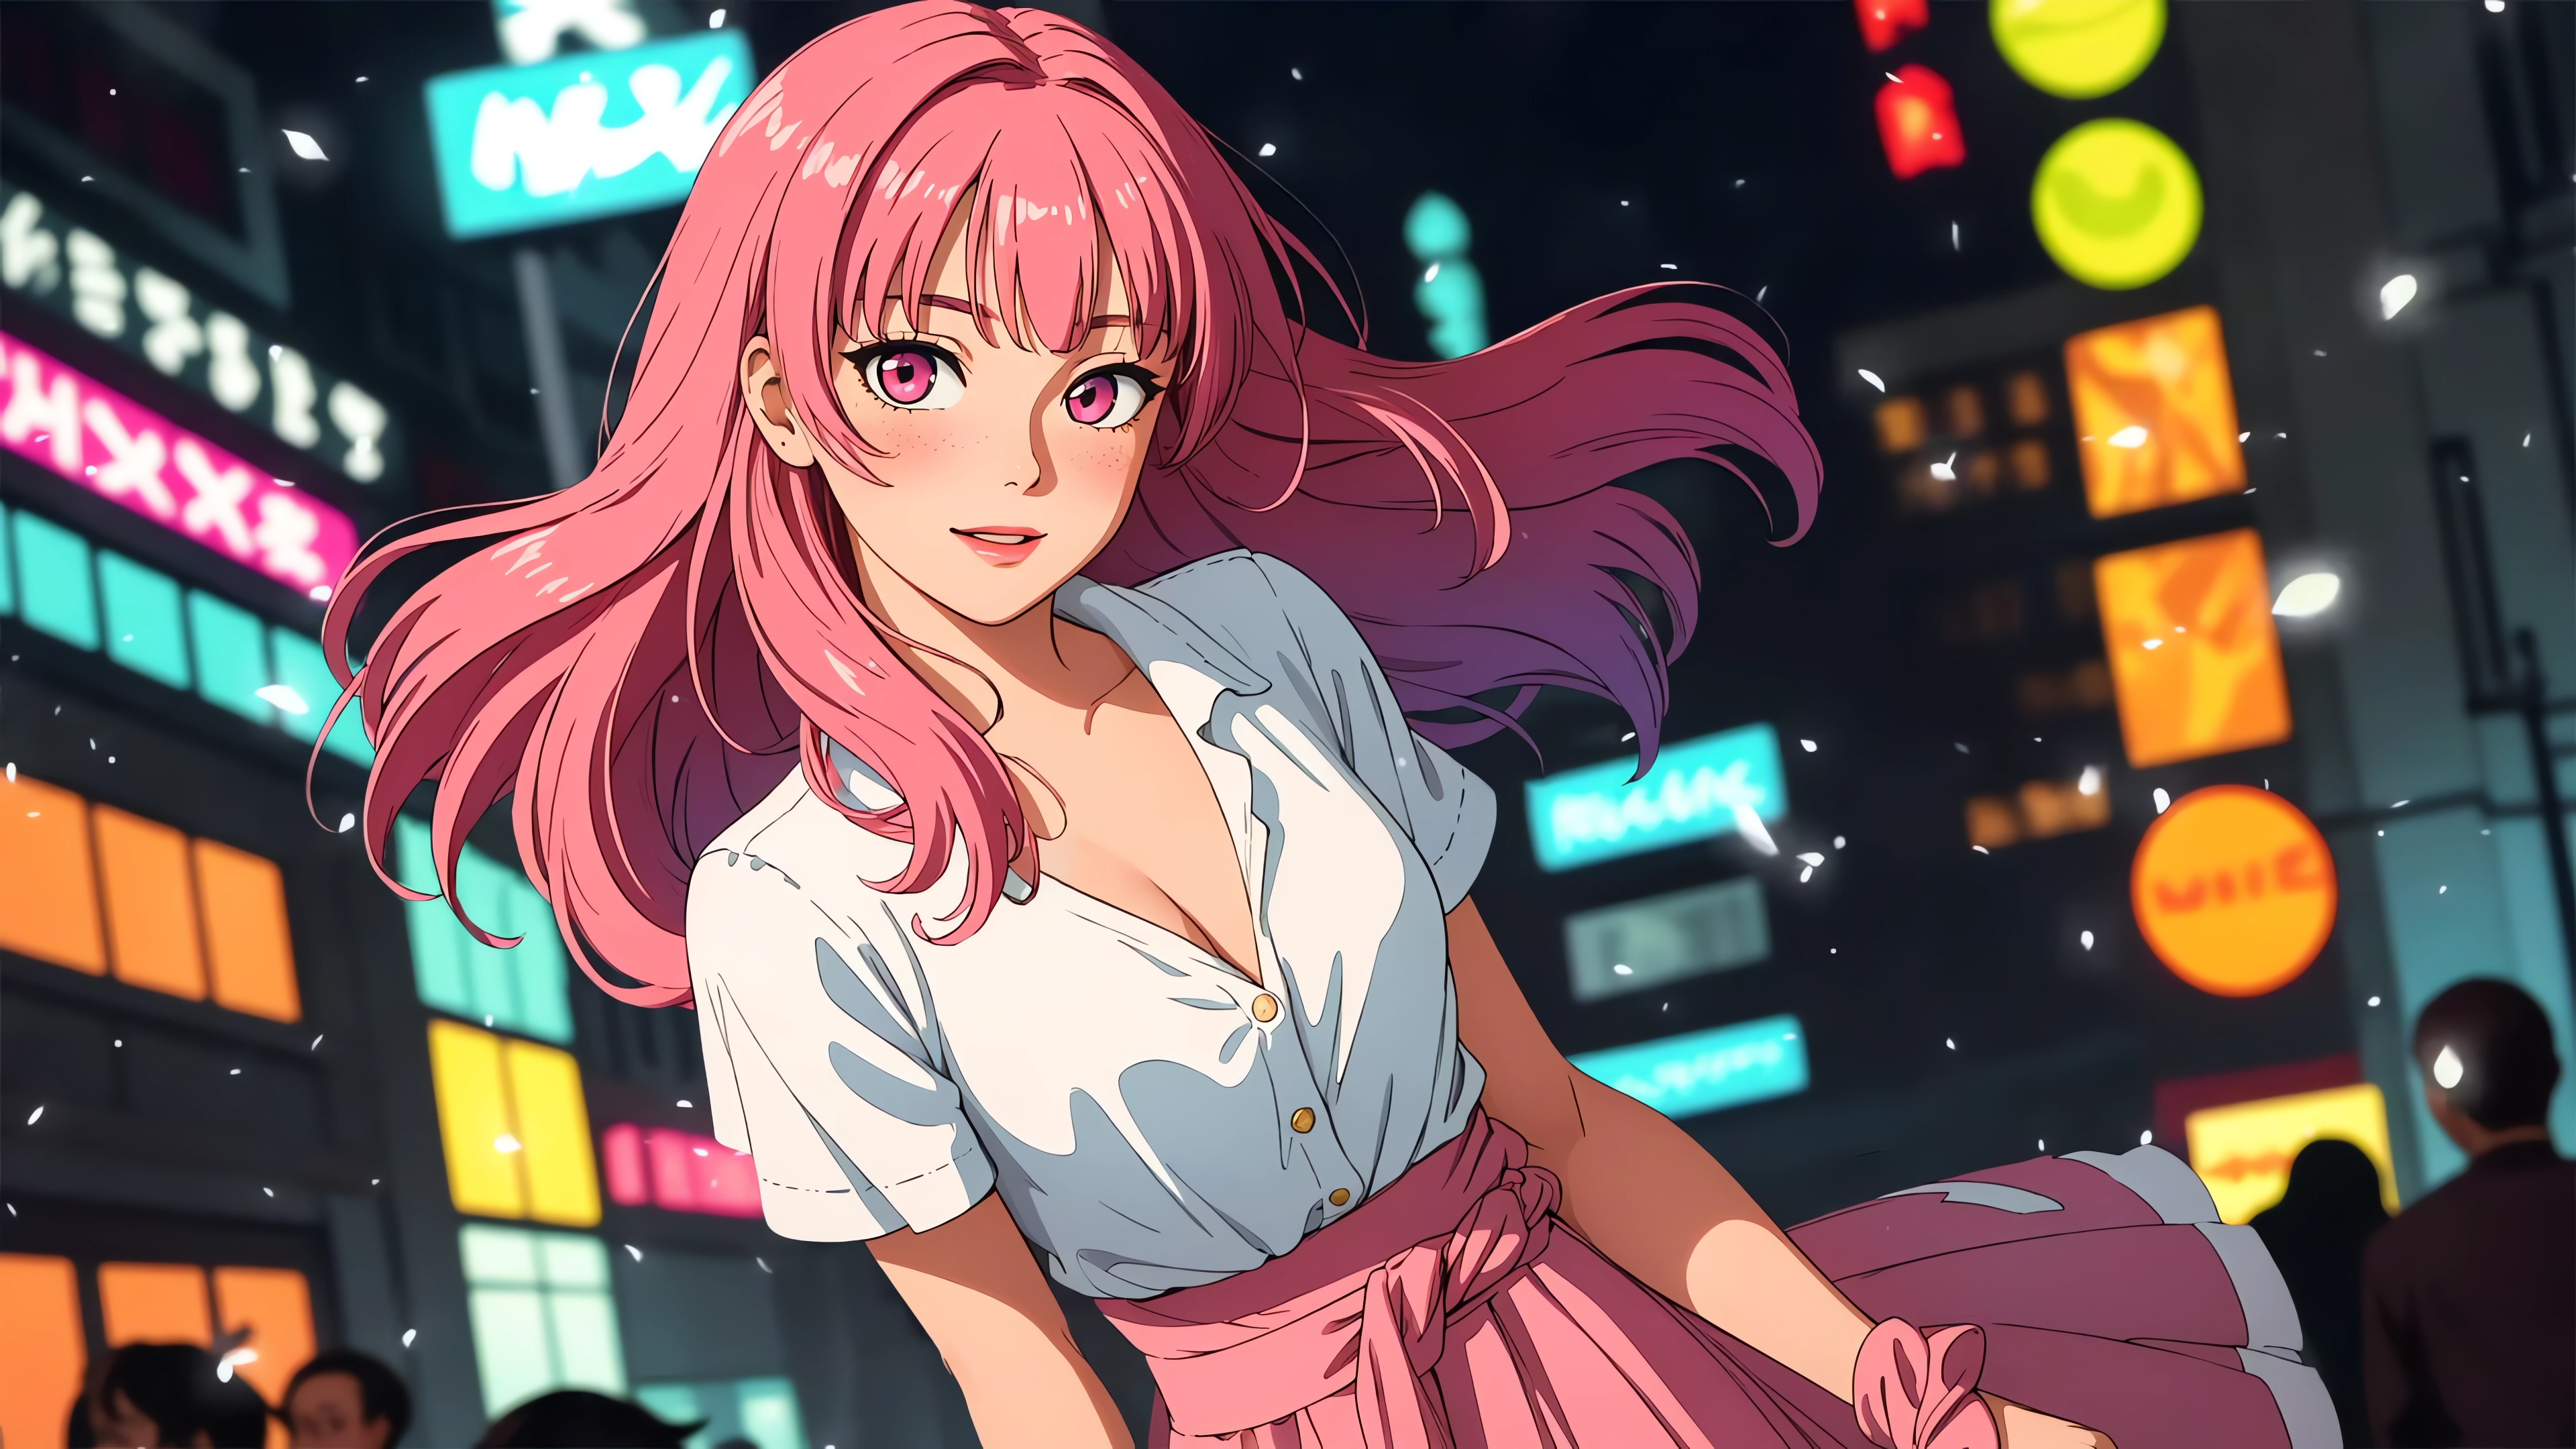 Artwork City Lights Digital Art Anime Girls Pink Hair Pink Eyes Blushing Smiling Looking At Viewer L 3840x2160